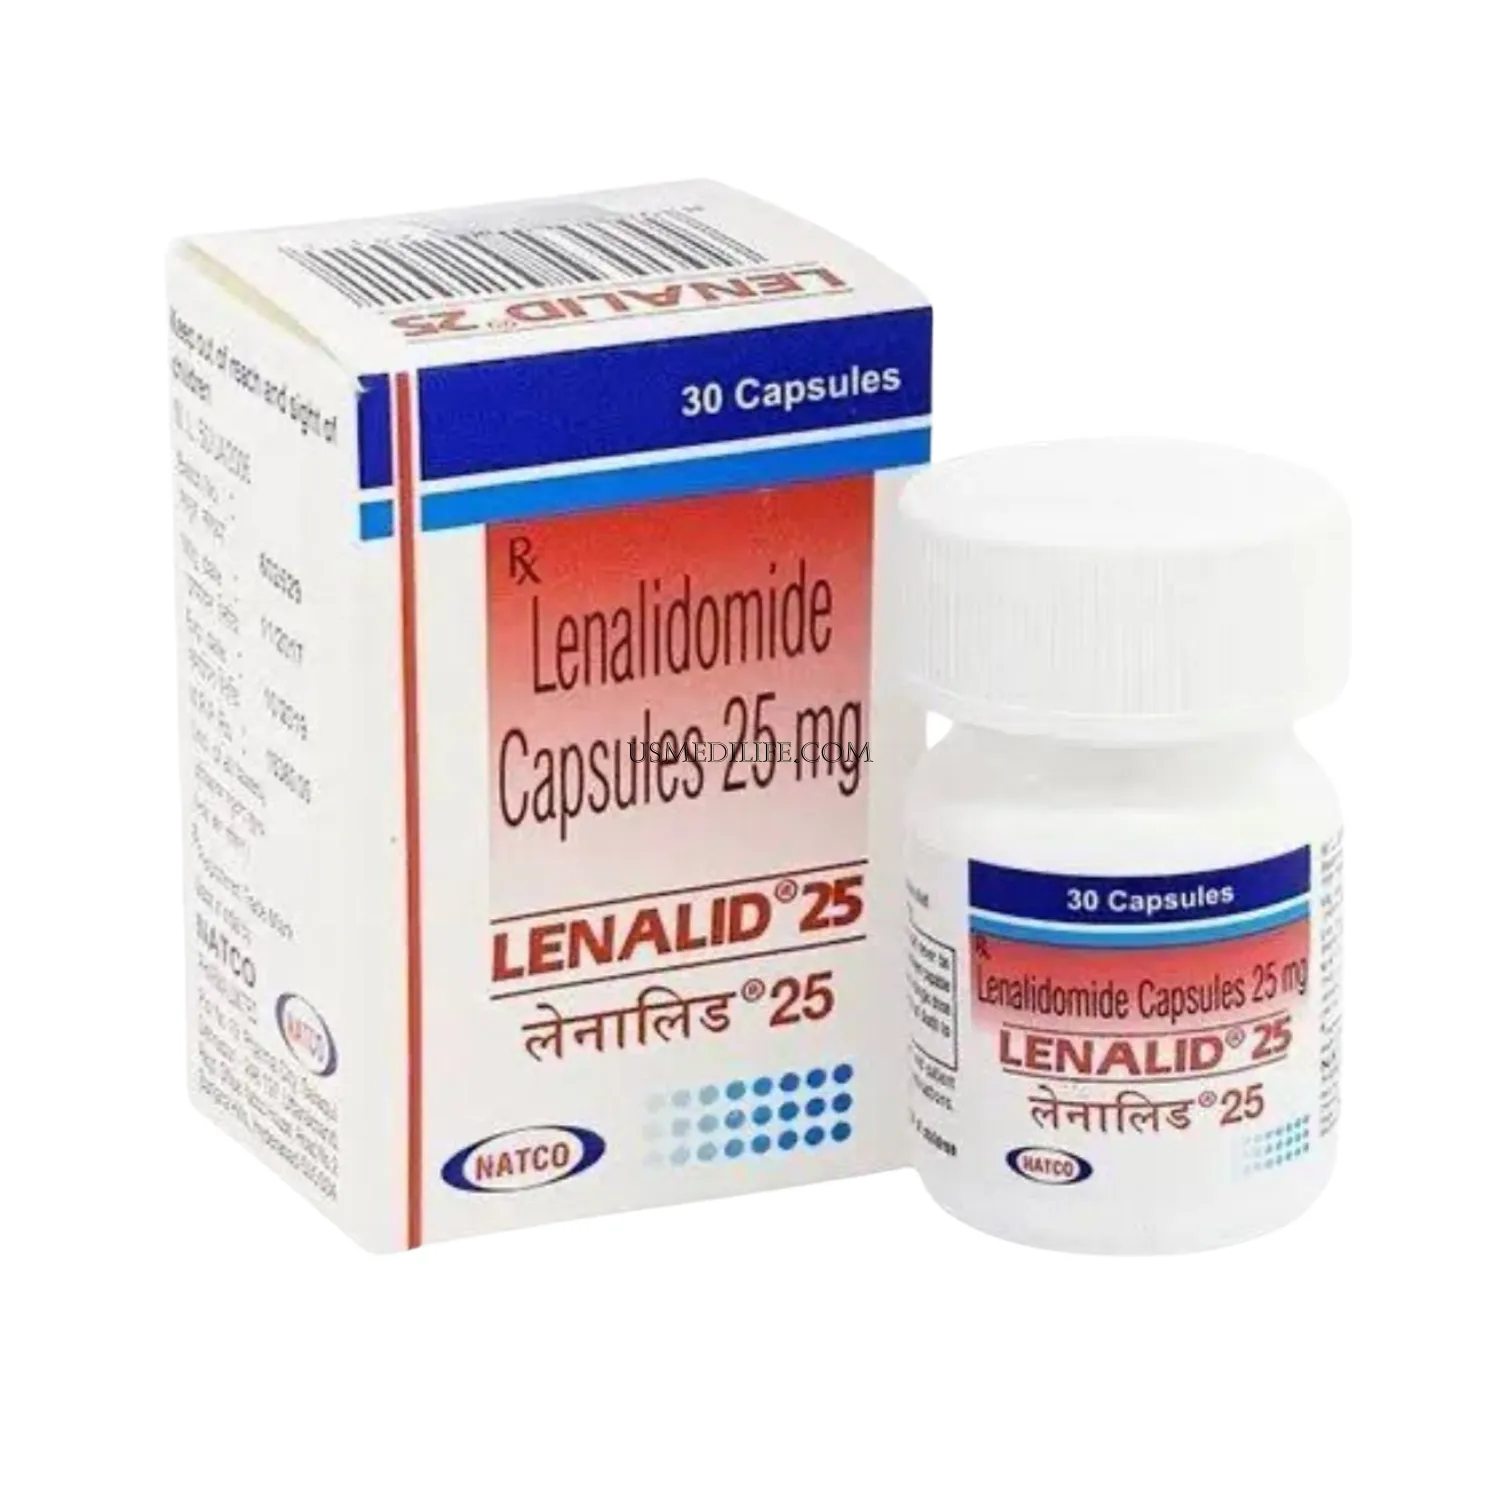 lenalid-25-mg-lenalidomide                    